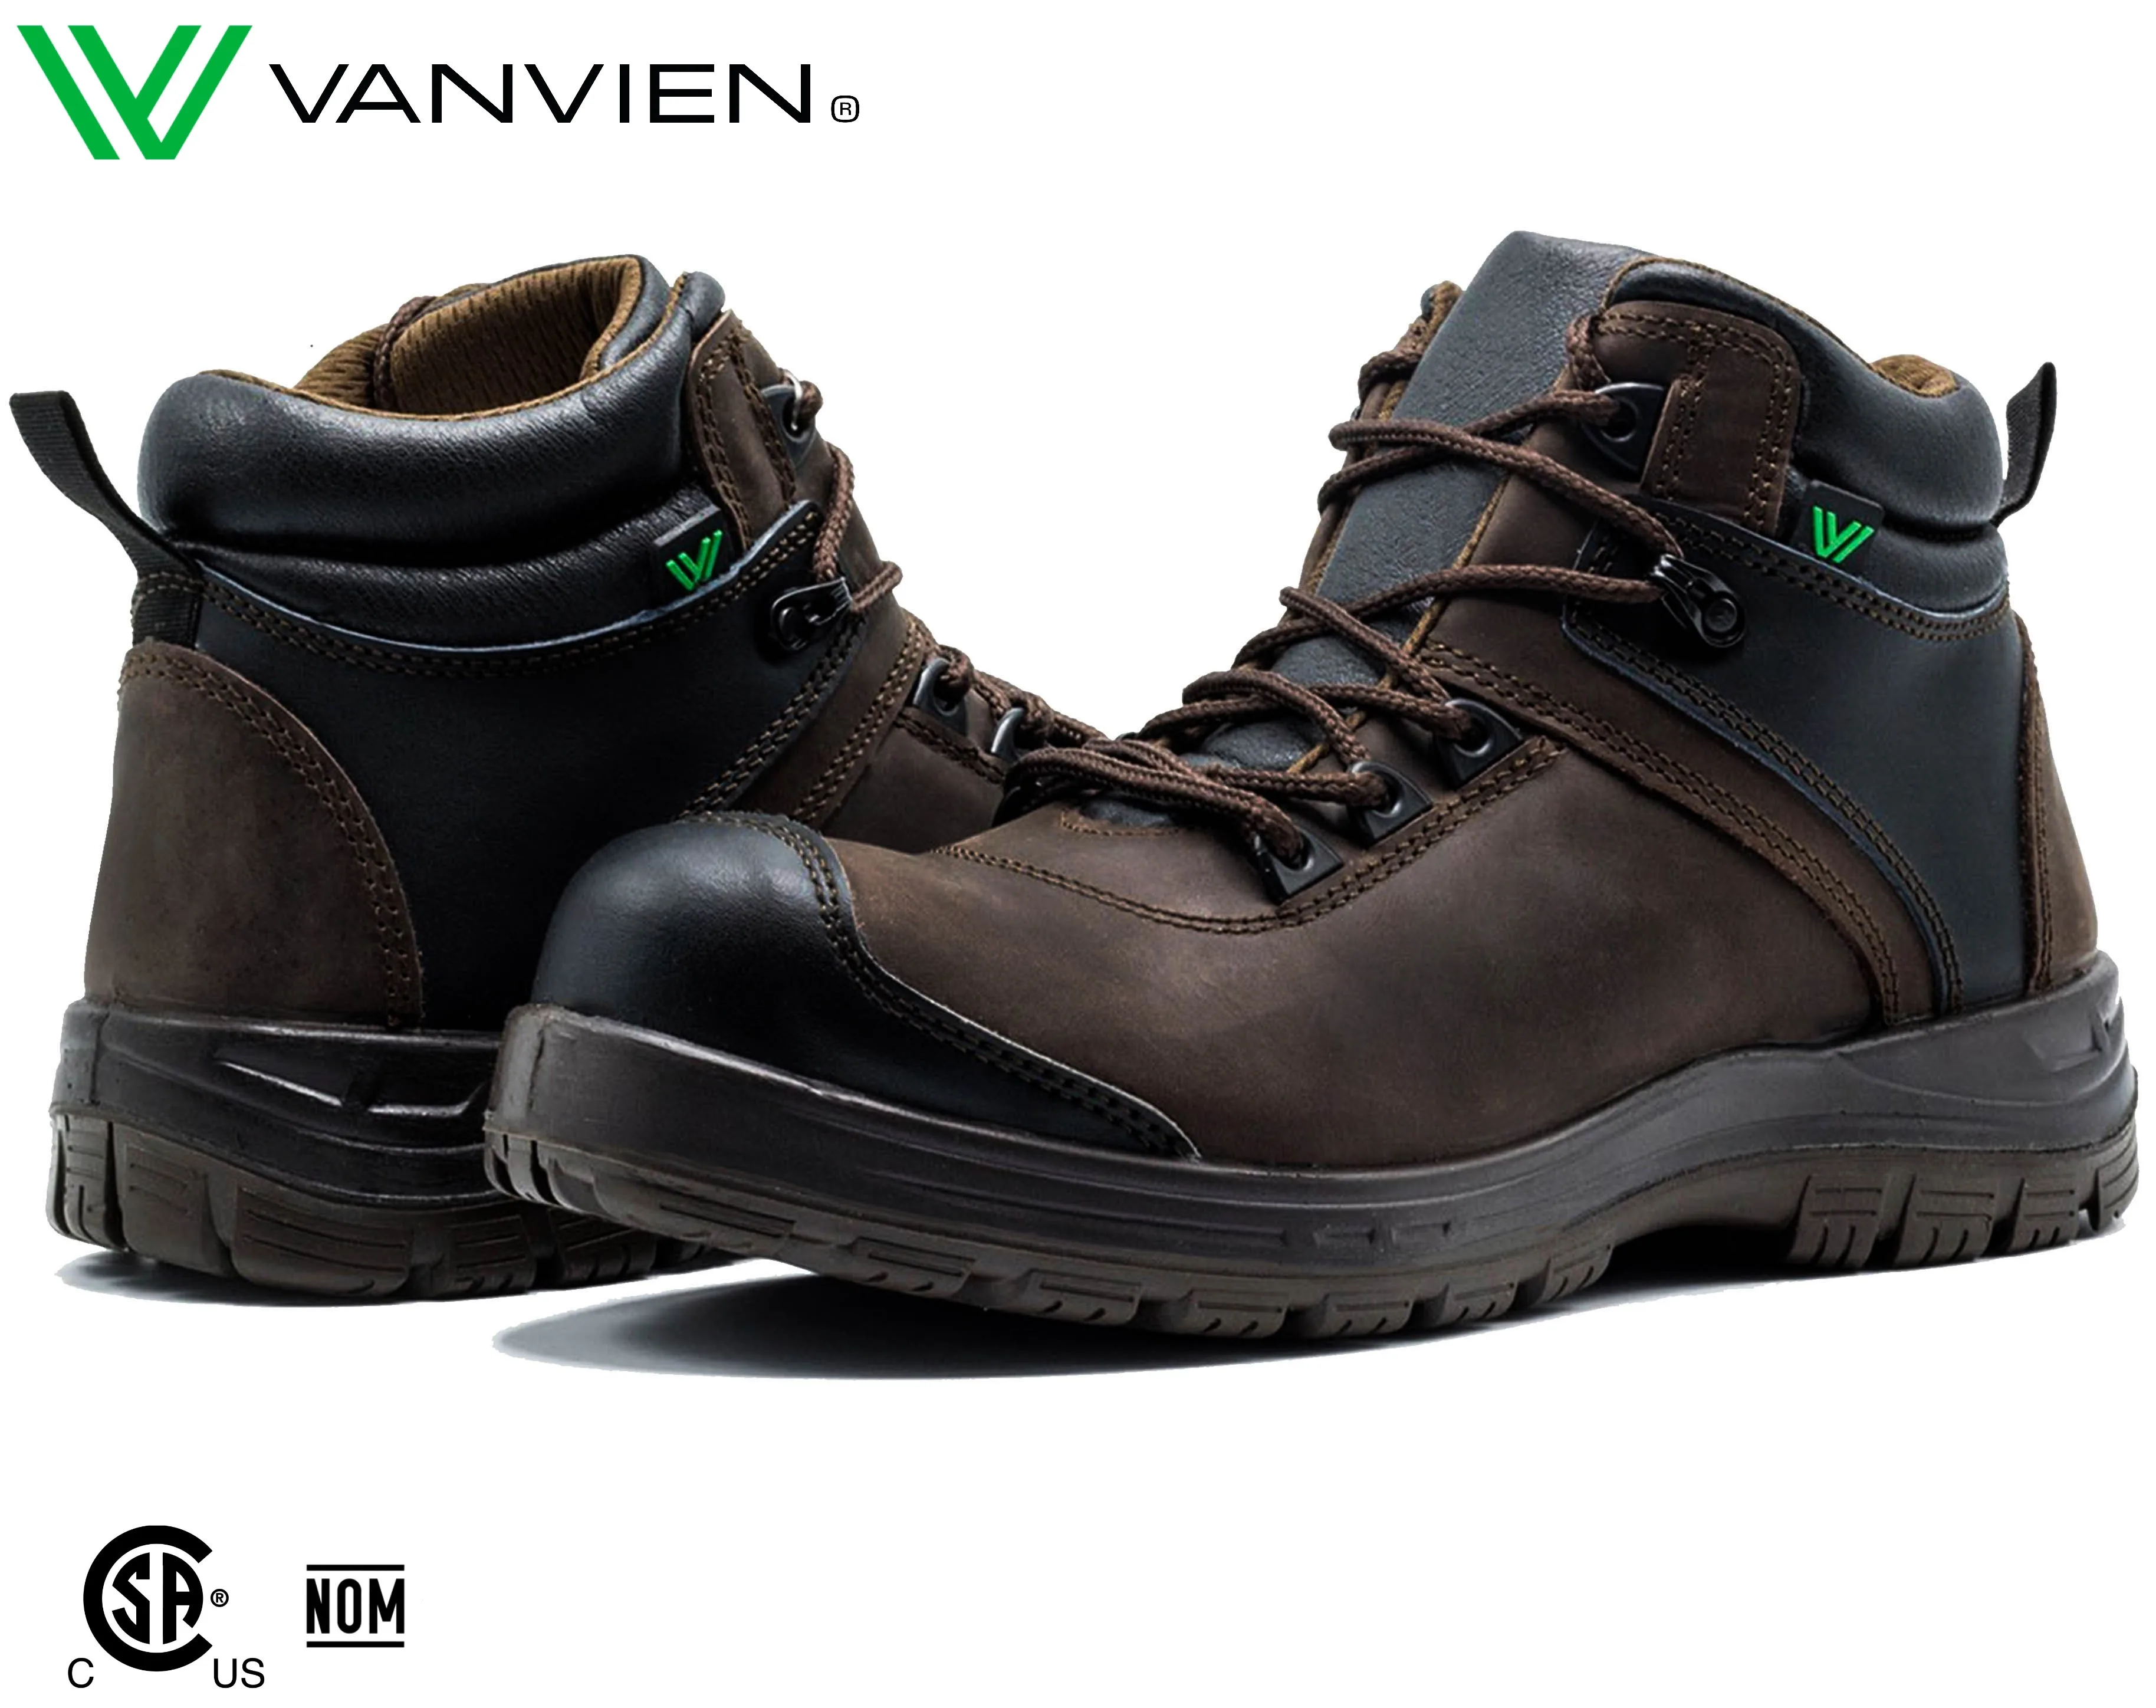 Safety Work Shoes Vanvien Omega - Buy 